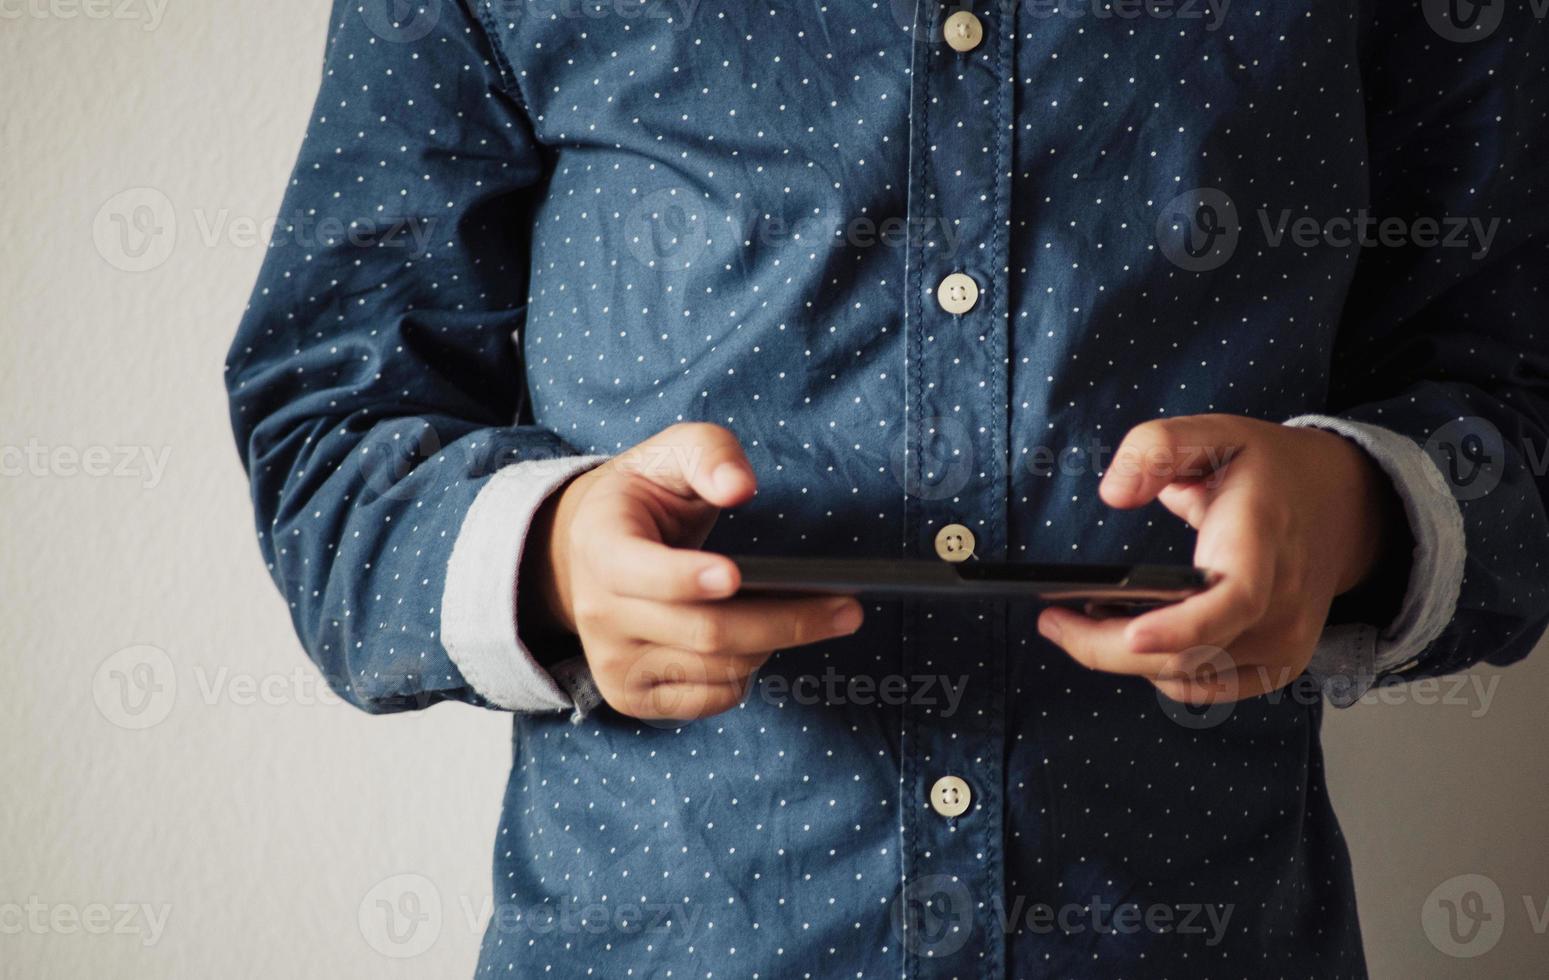 jongen die spelletjes speelt op smartphones, jongenshand die een smartphone vasthoudt foto